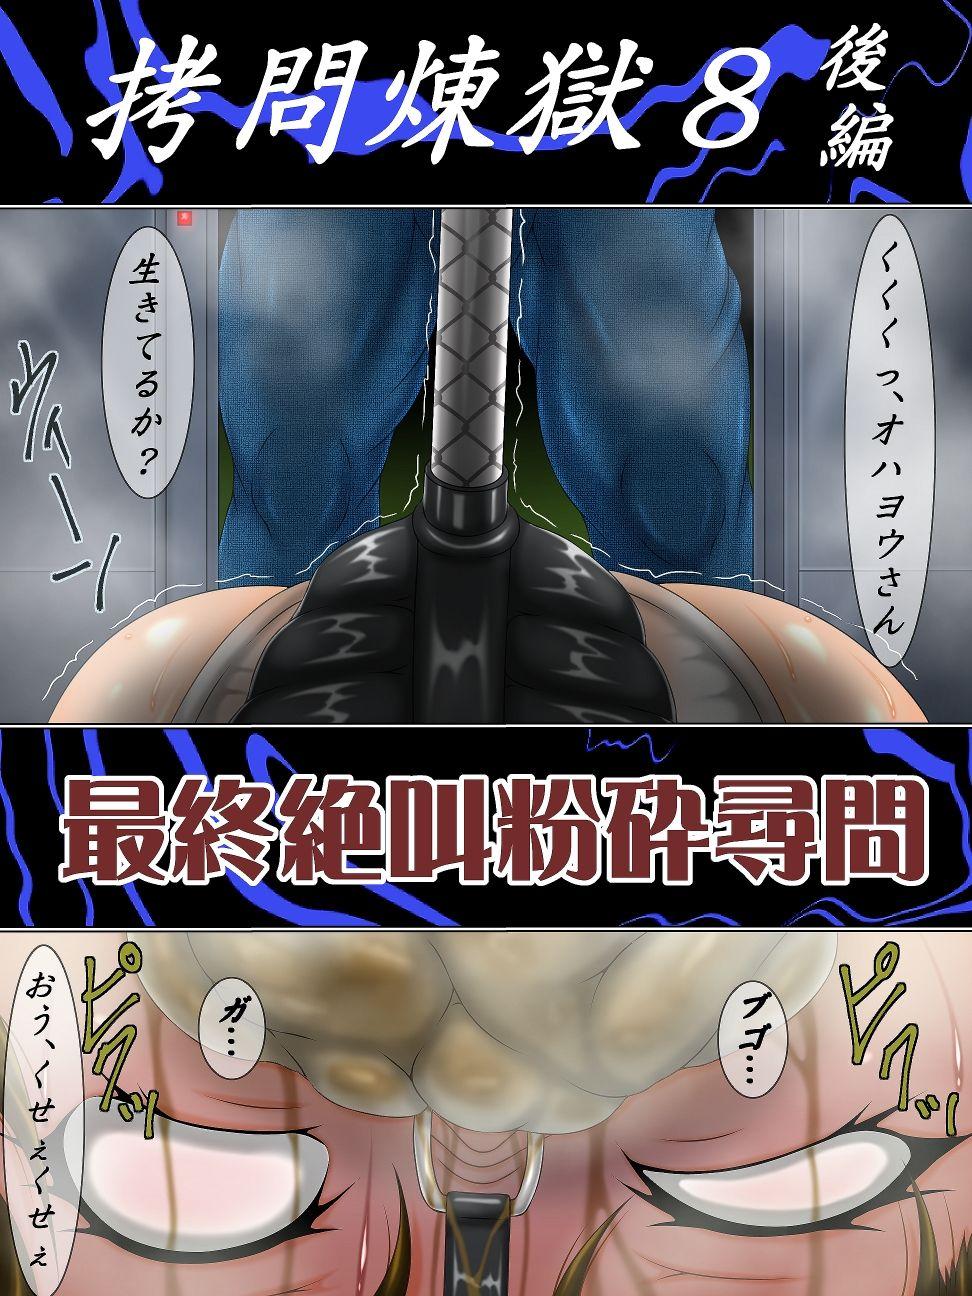 Tied Gōmon rengoku 8 kōhen saishū zekkyō funsai jinmon - Final fantasy vii Foot Fetish - Page 2